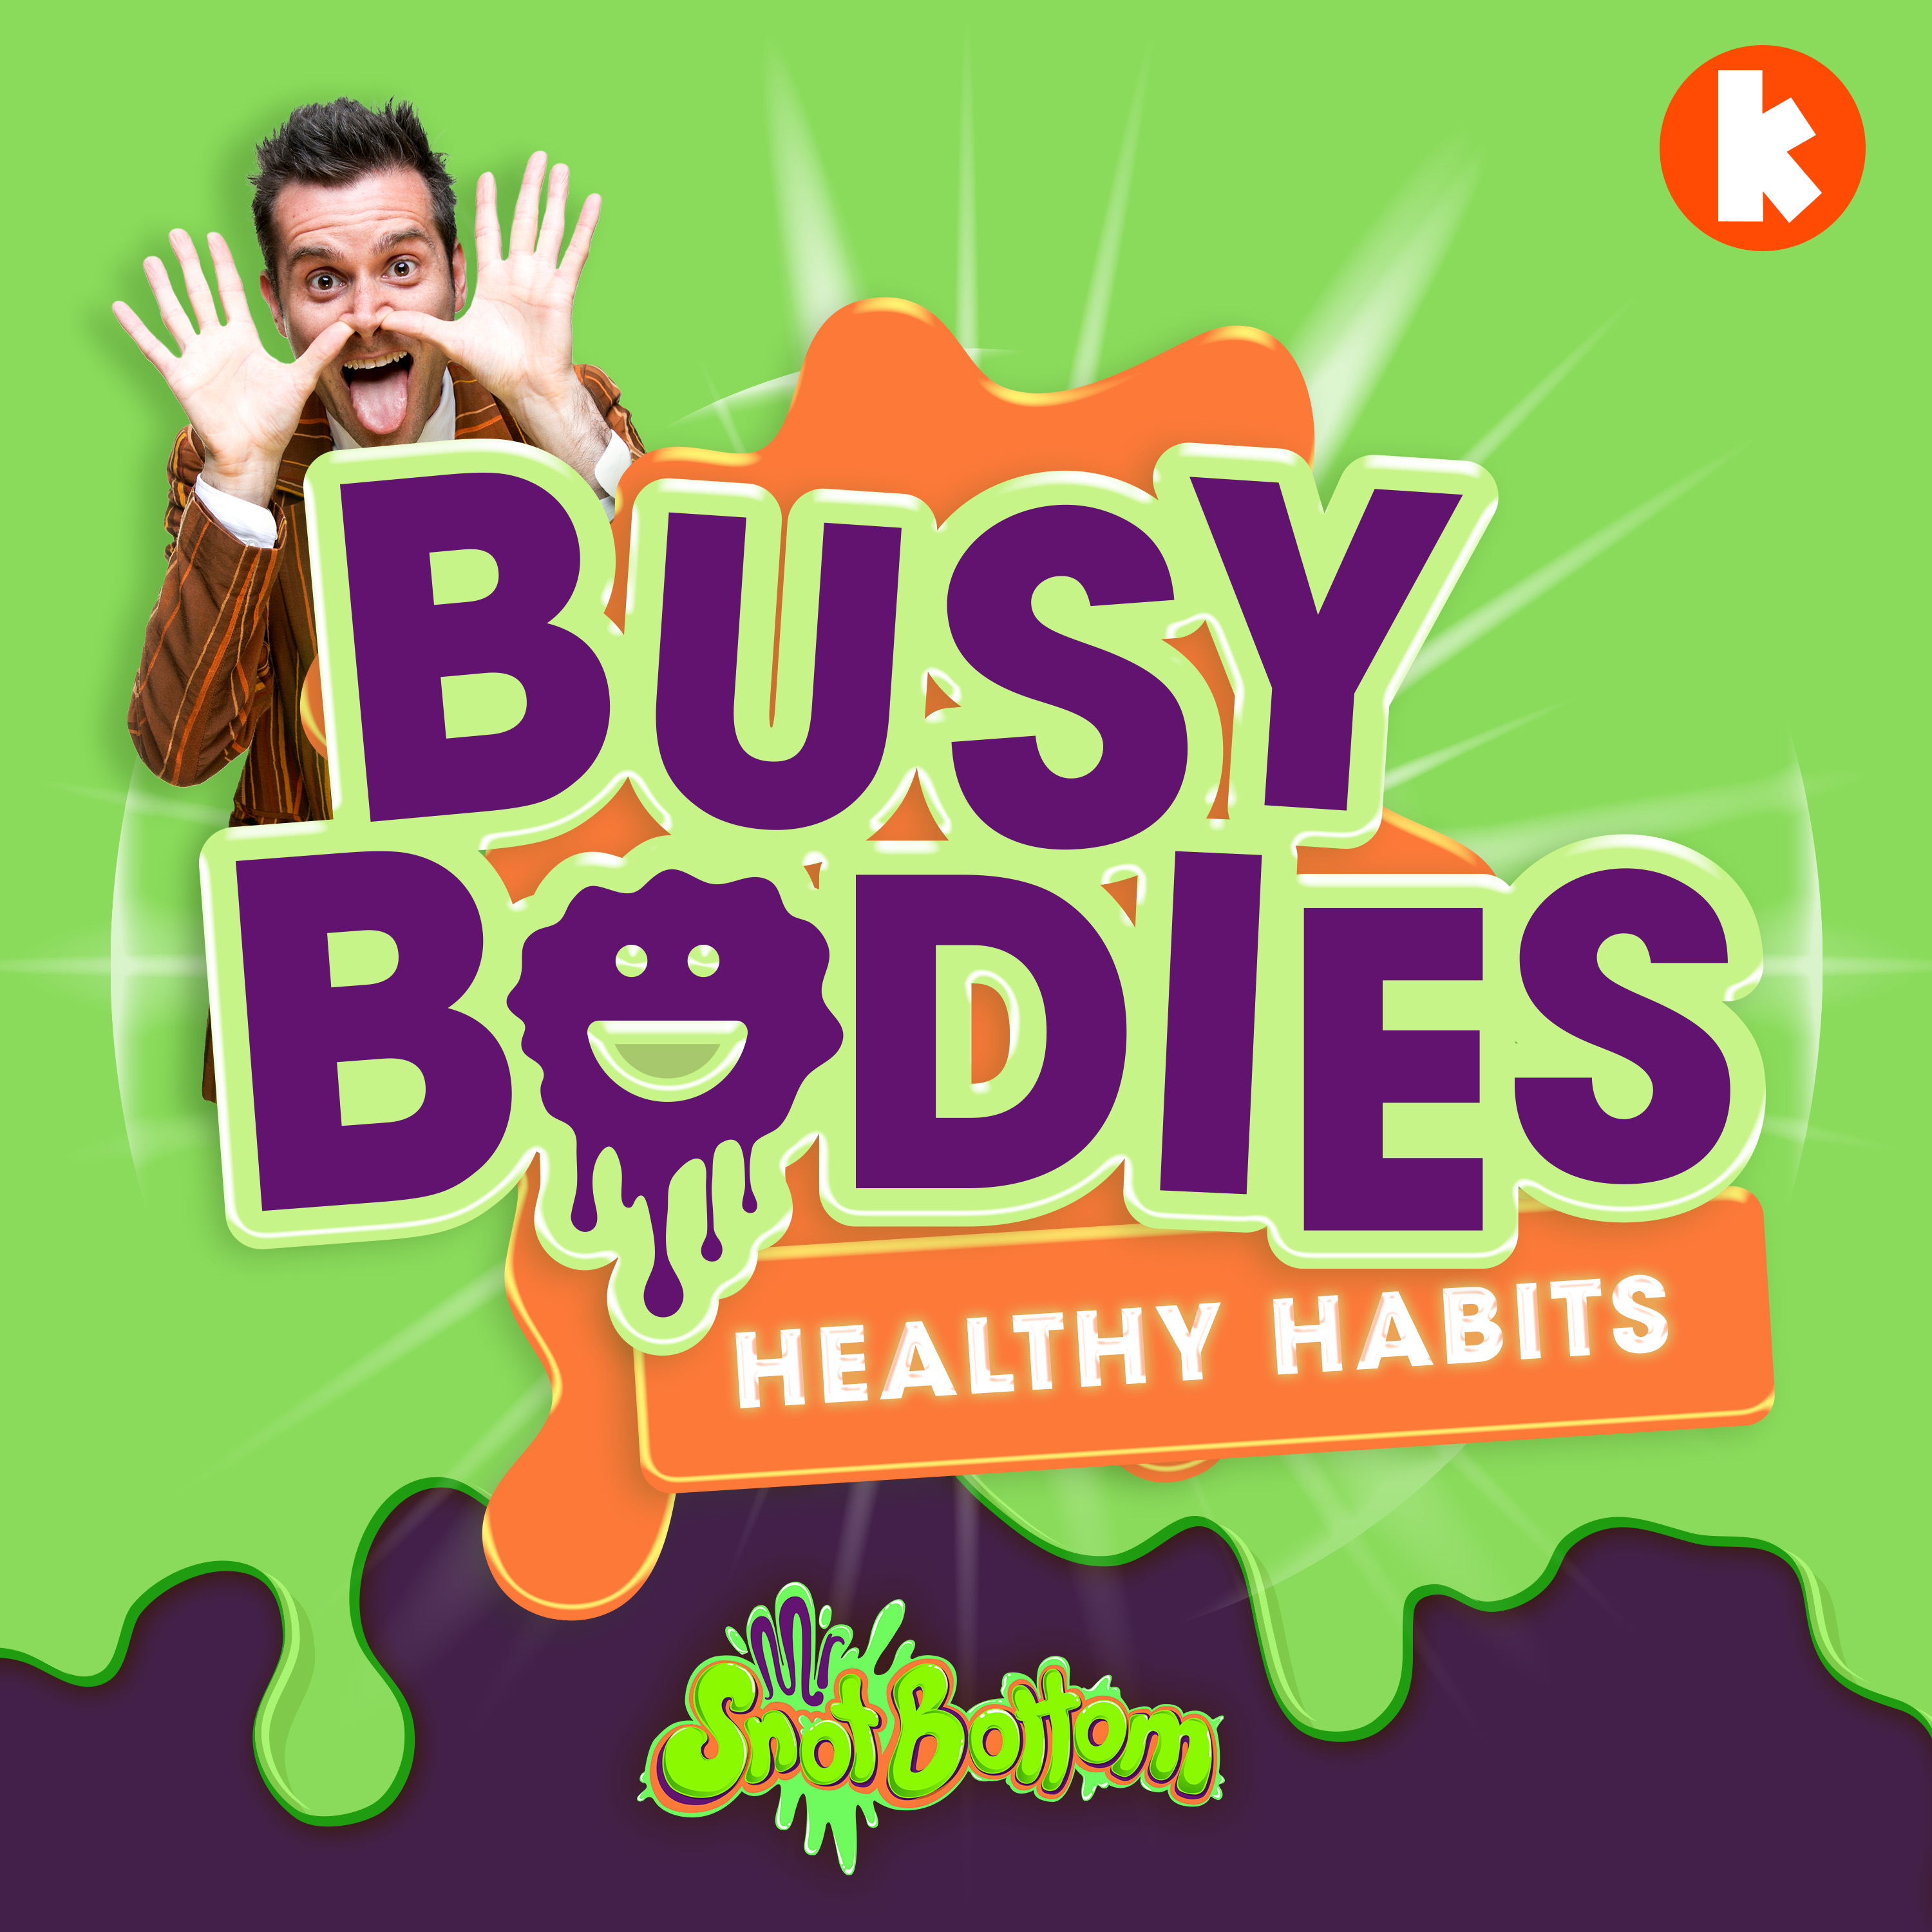 New season - Healthy Habits - March 7!